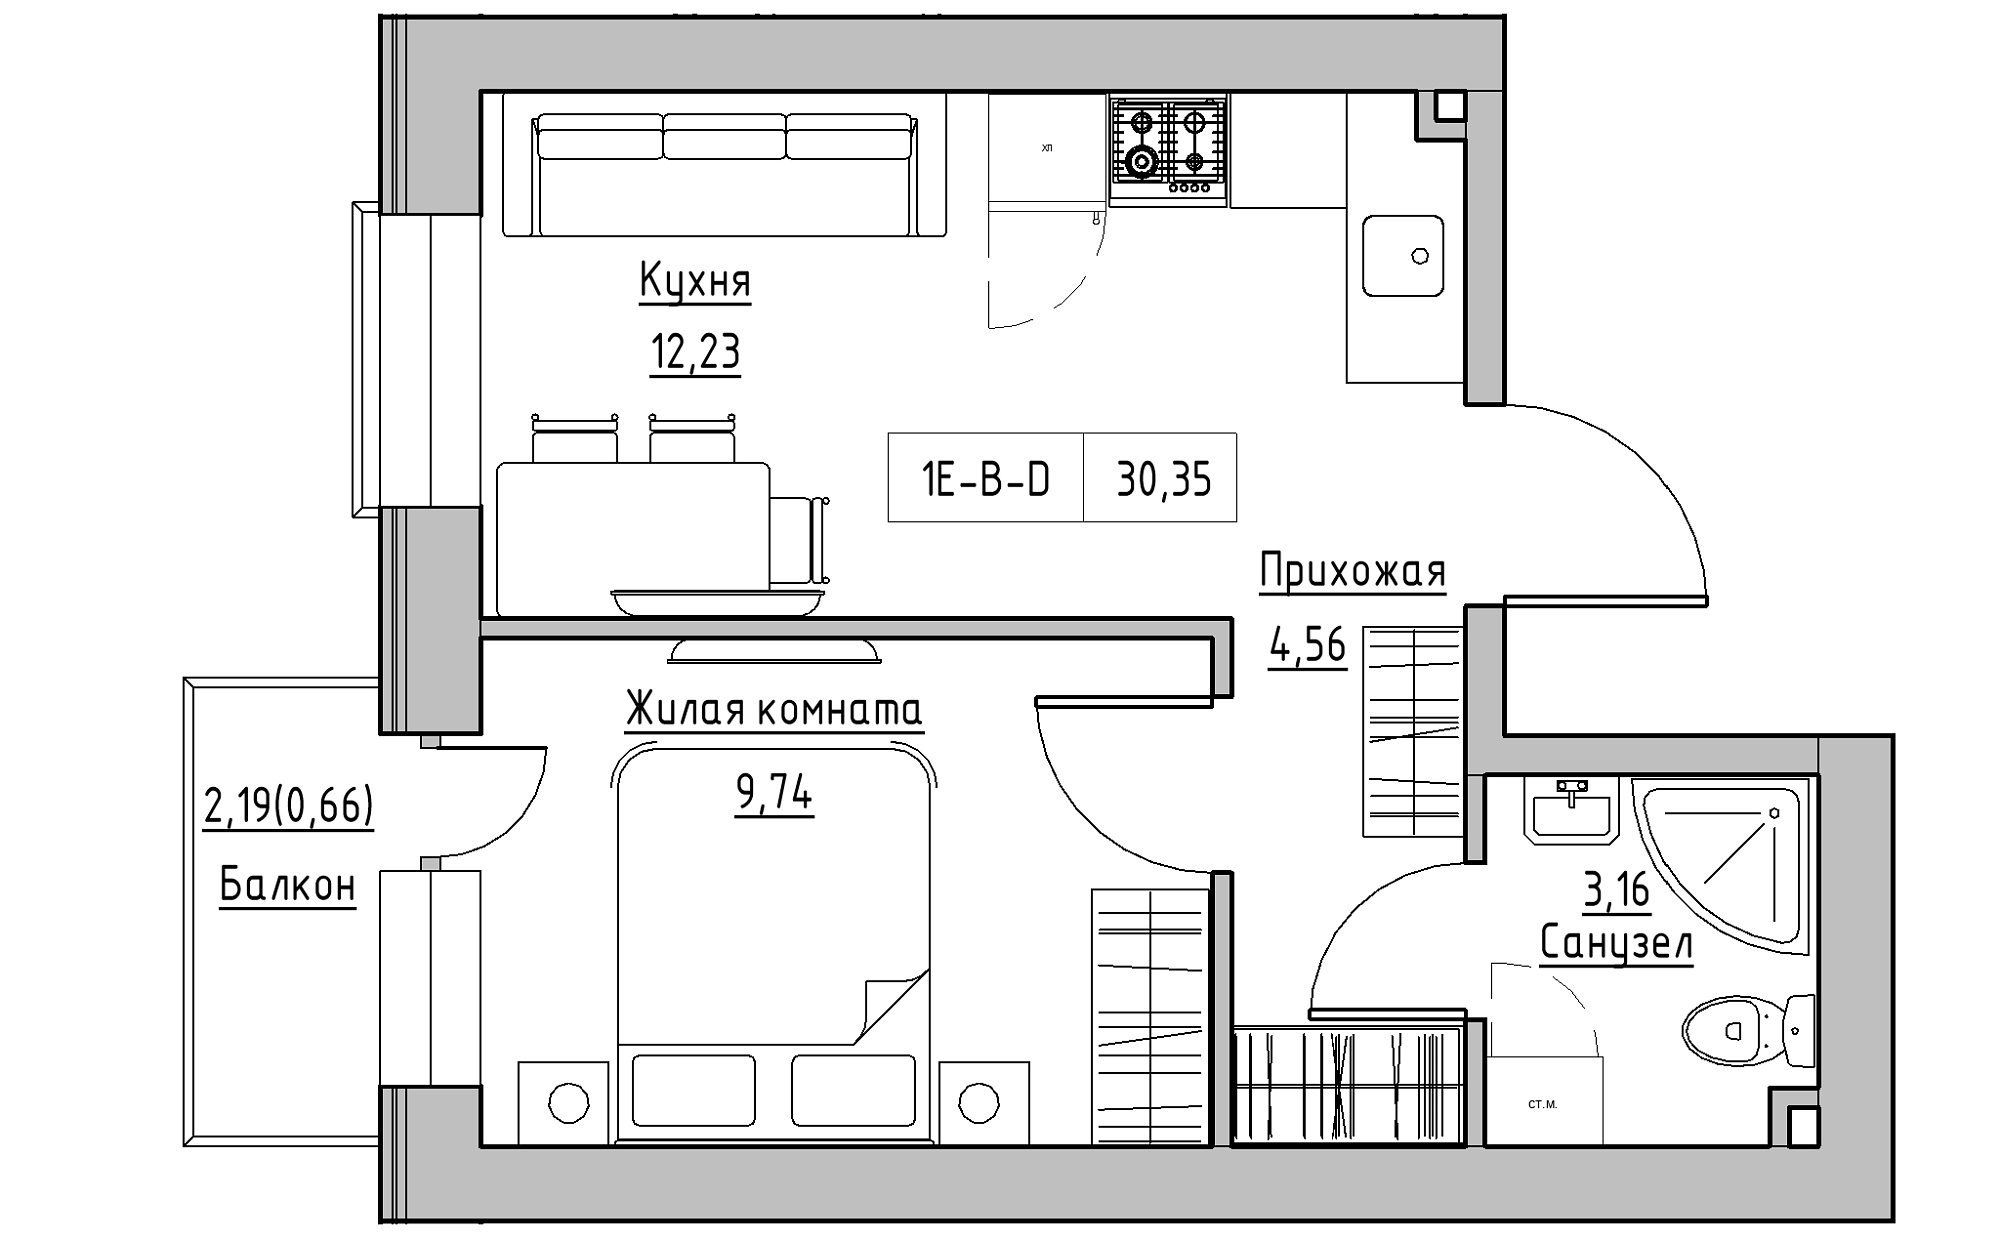 Планування 1-к квартира площею 30.35м2, KS-022-05/0015.